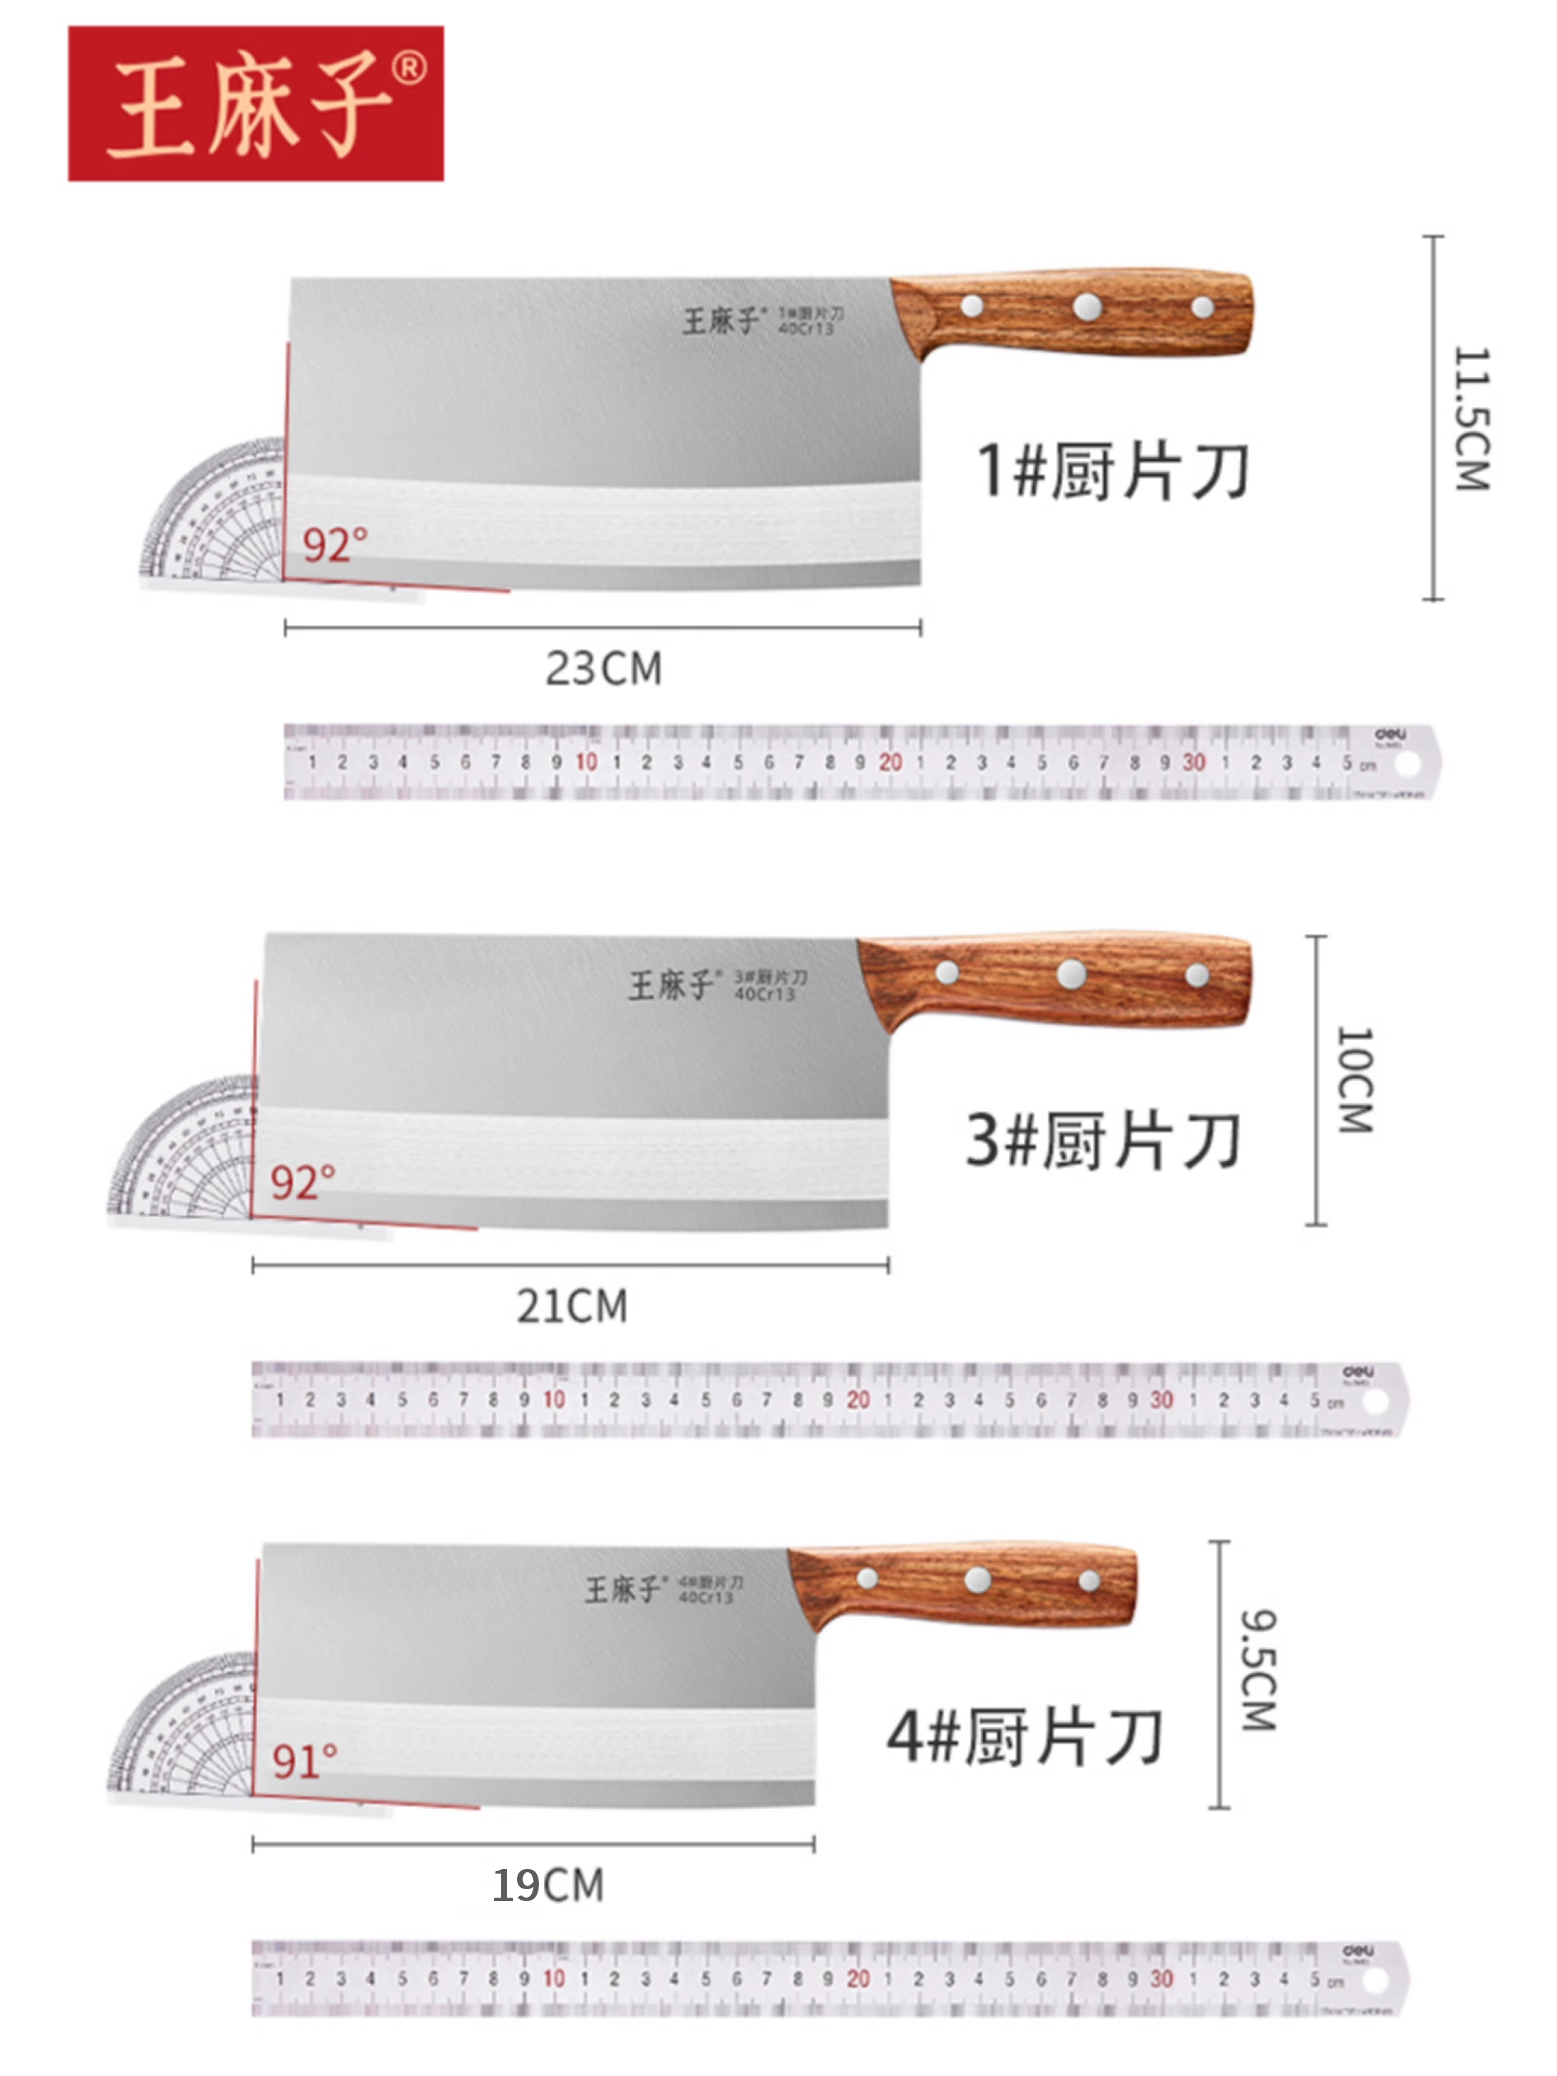 王麻子家用菜刀锻打不锈钢锋利厨刀斩切片肉厨师厨房专用菜刀刀具 - 图3